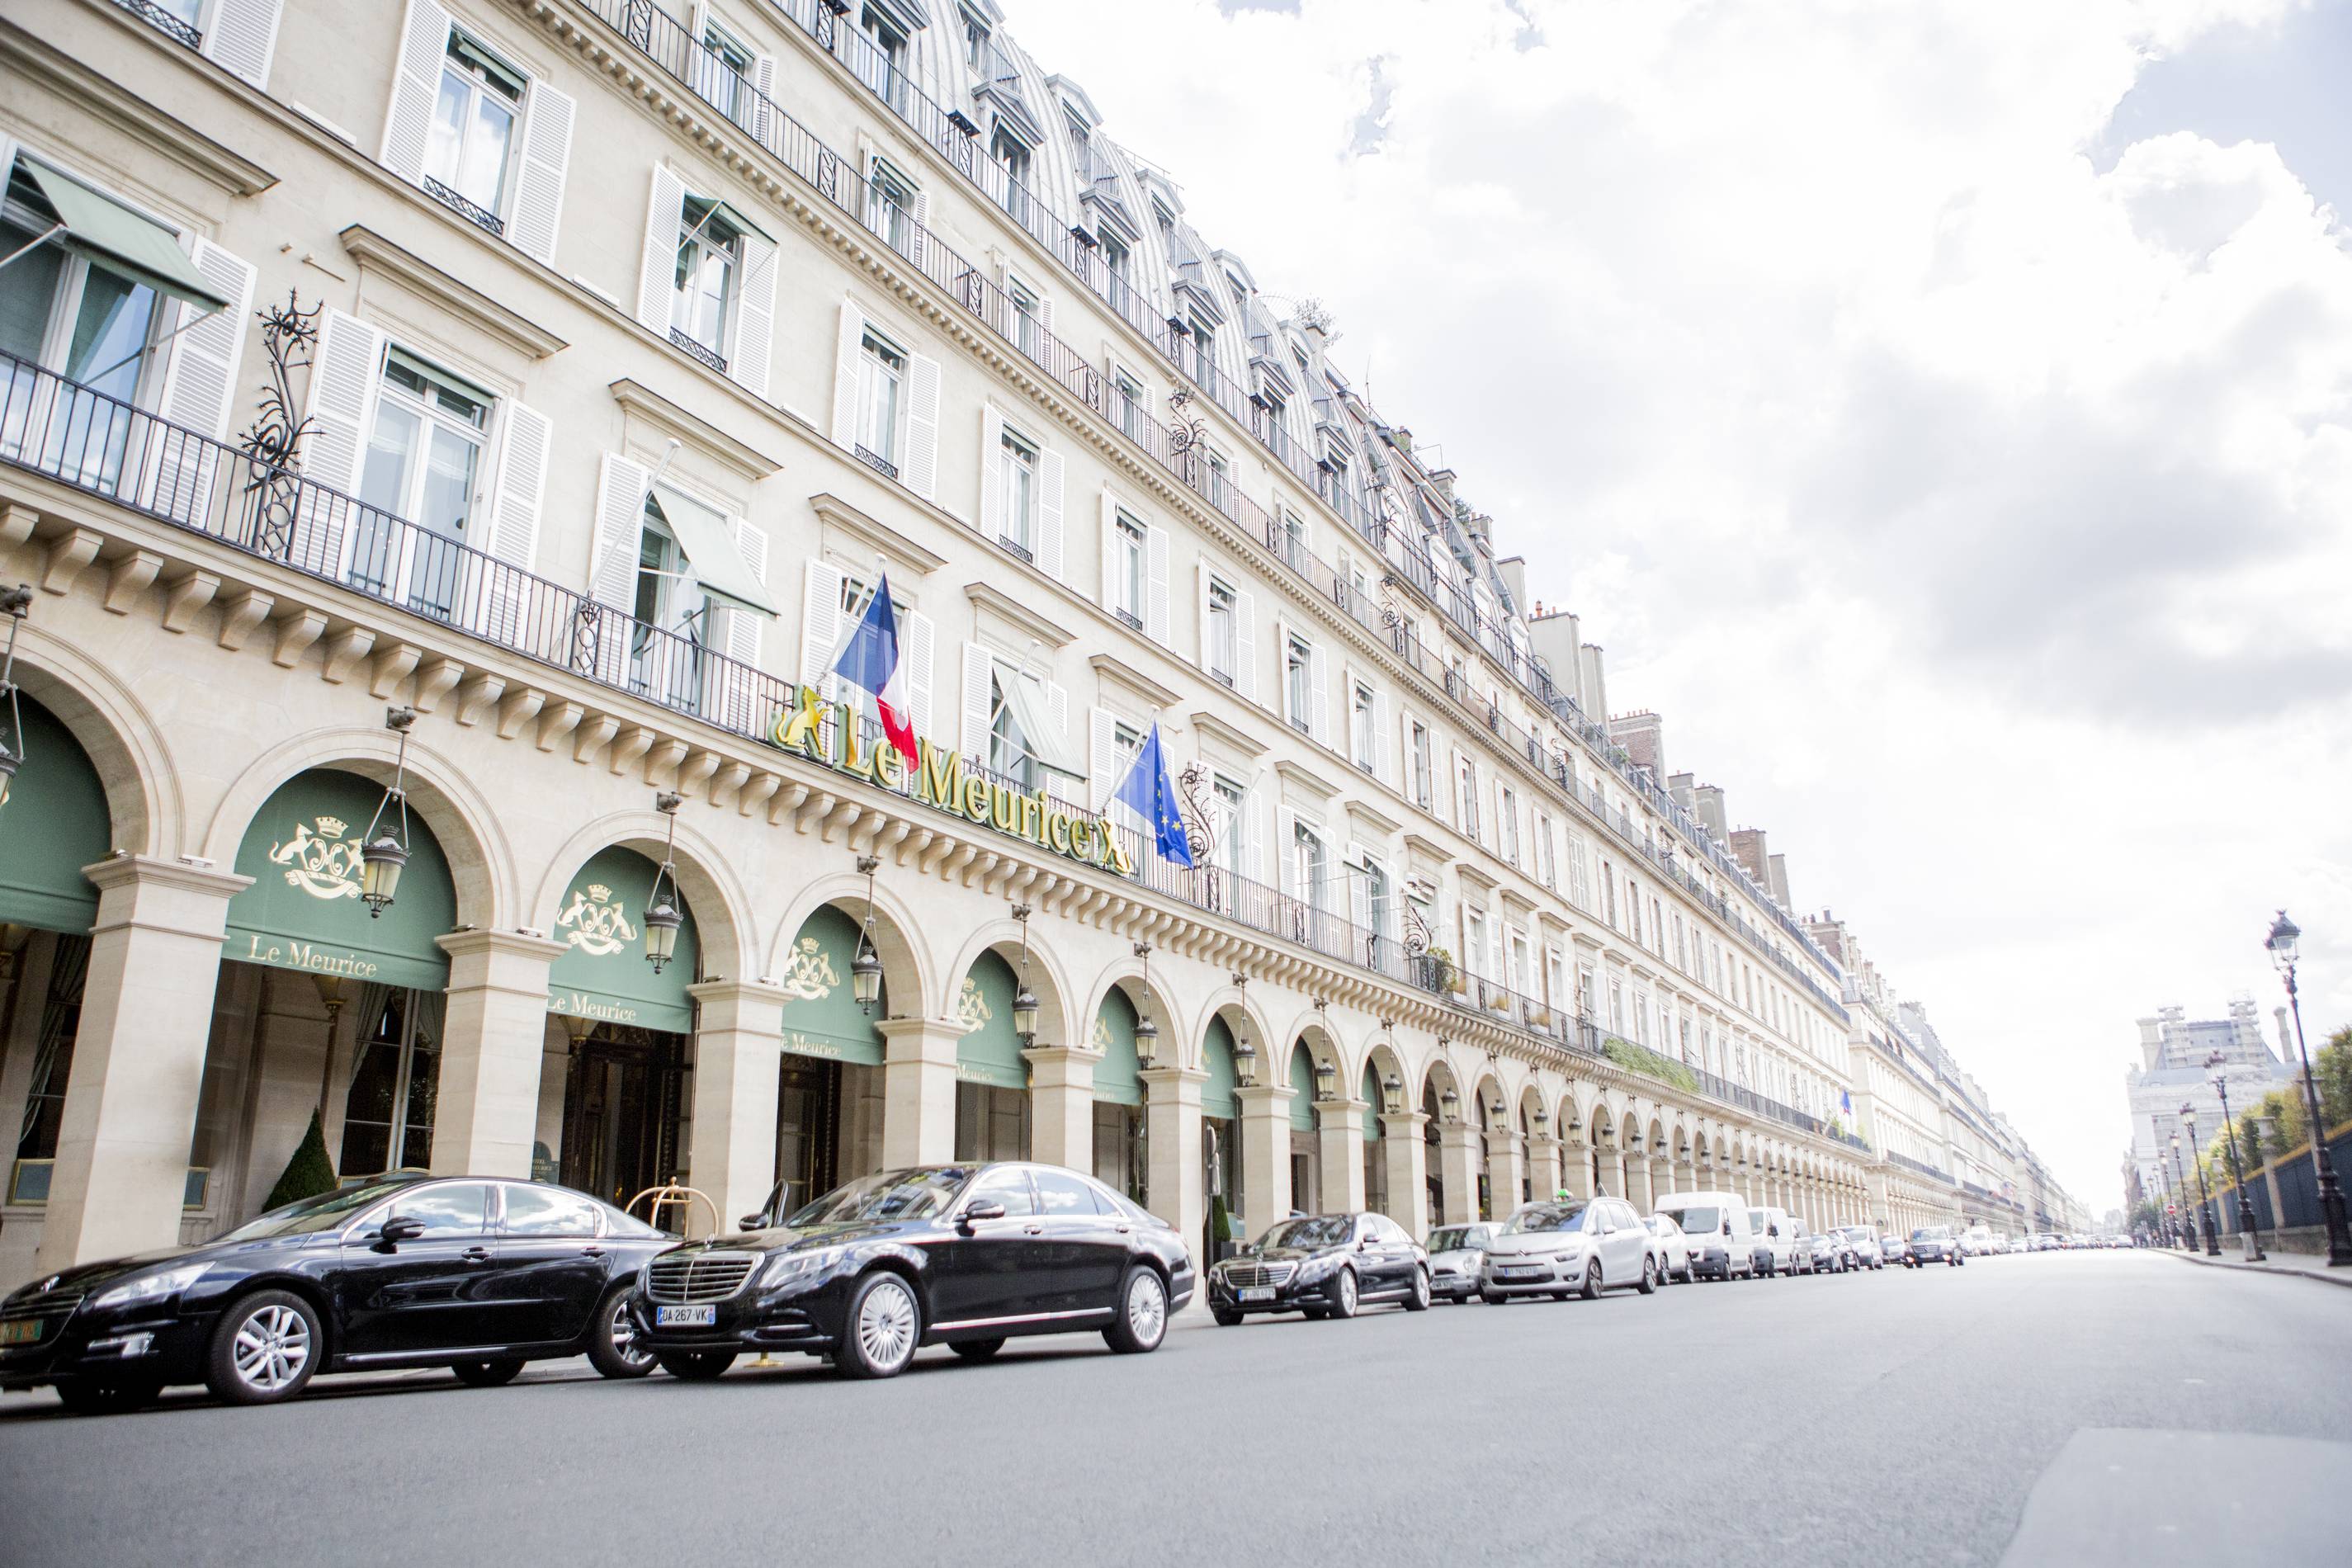 Le Meurice hotel in Paris